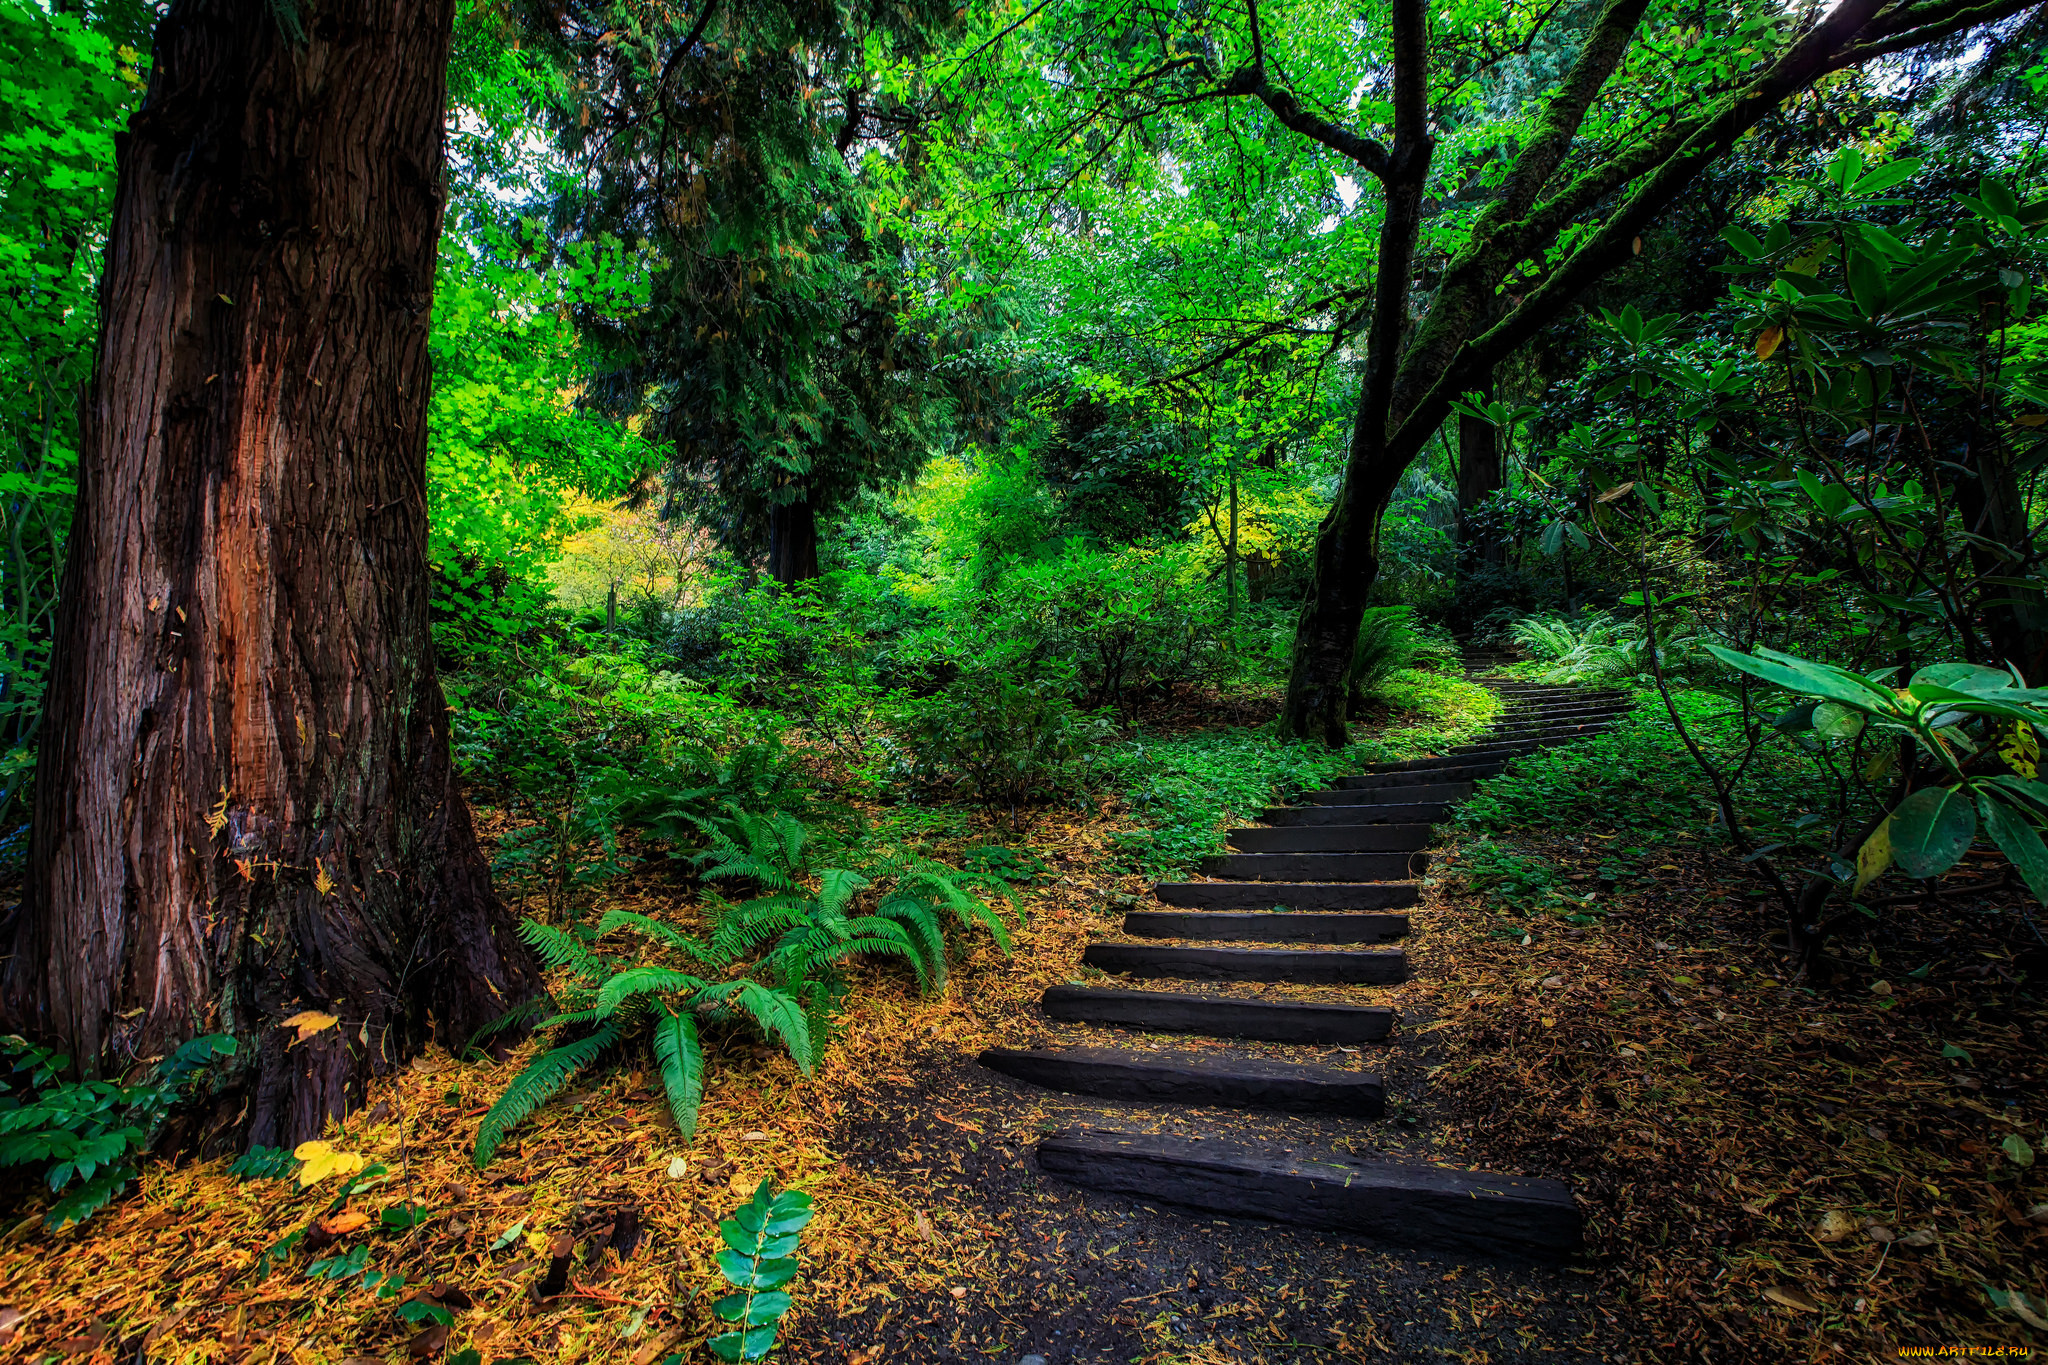 Сходи в лес. Ступеньки в лесу. Деревянные ступени в лесу. Тропинка лестница. Ступени в природе.